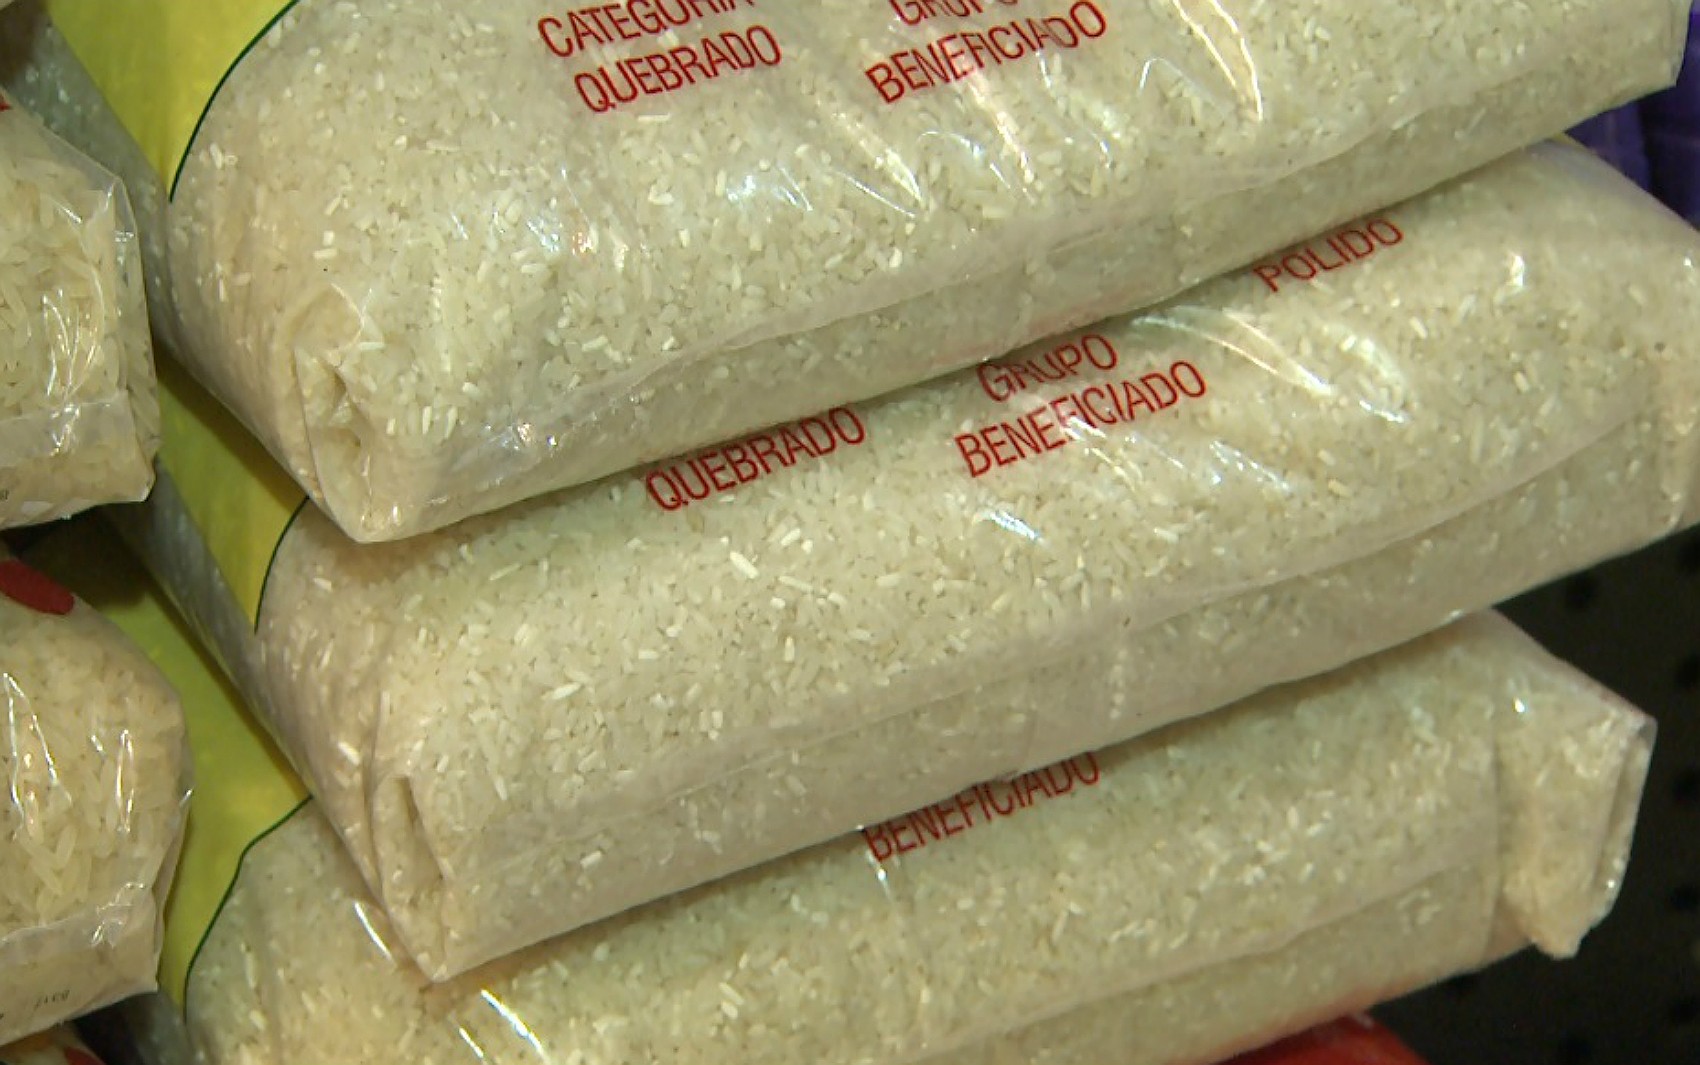 Pai de sete filhos preso por furtar 10 kg de arroz é absolvido pela Justiça no Ceará